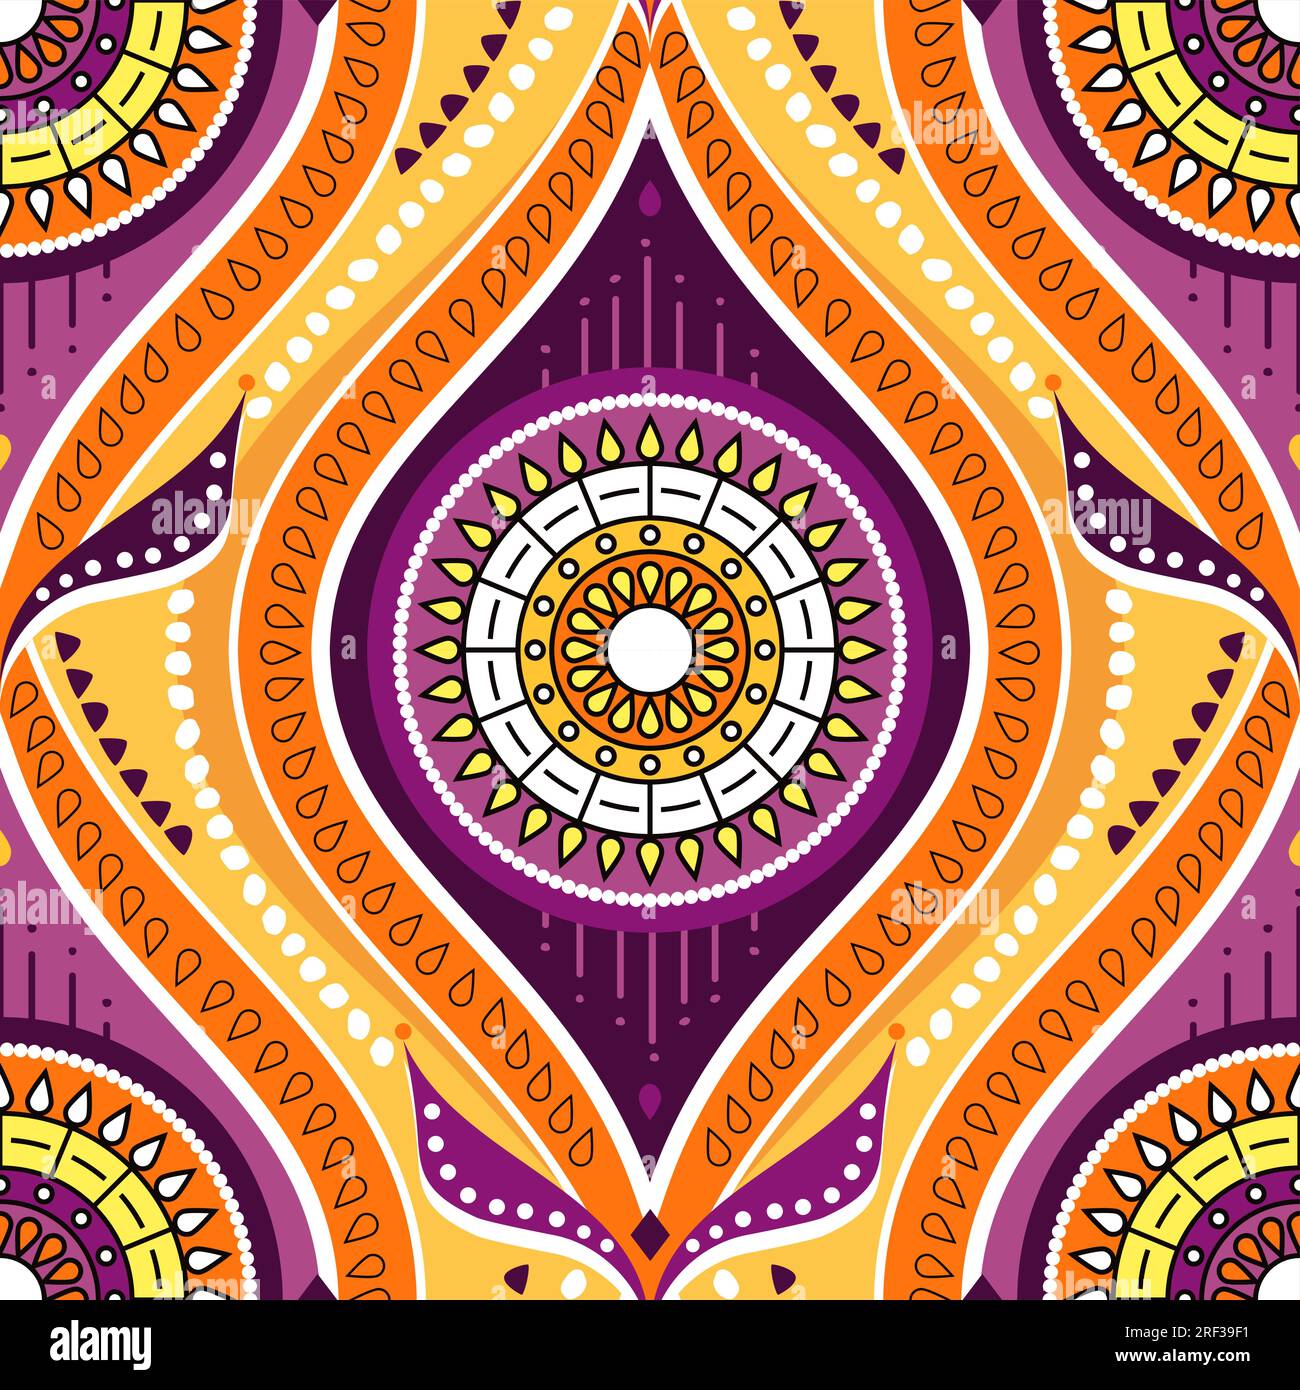 Cire africaine ou modèle sans couture vecteur Ankara, design textile Batic avec mandalas floraux - ornement traditionnel du Kenya, de l'Afrique de l'Ouest et du Centre Illustration de Vecteur